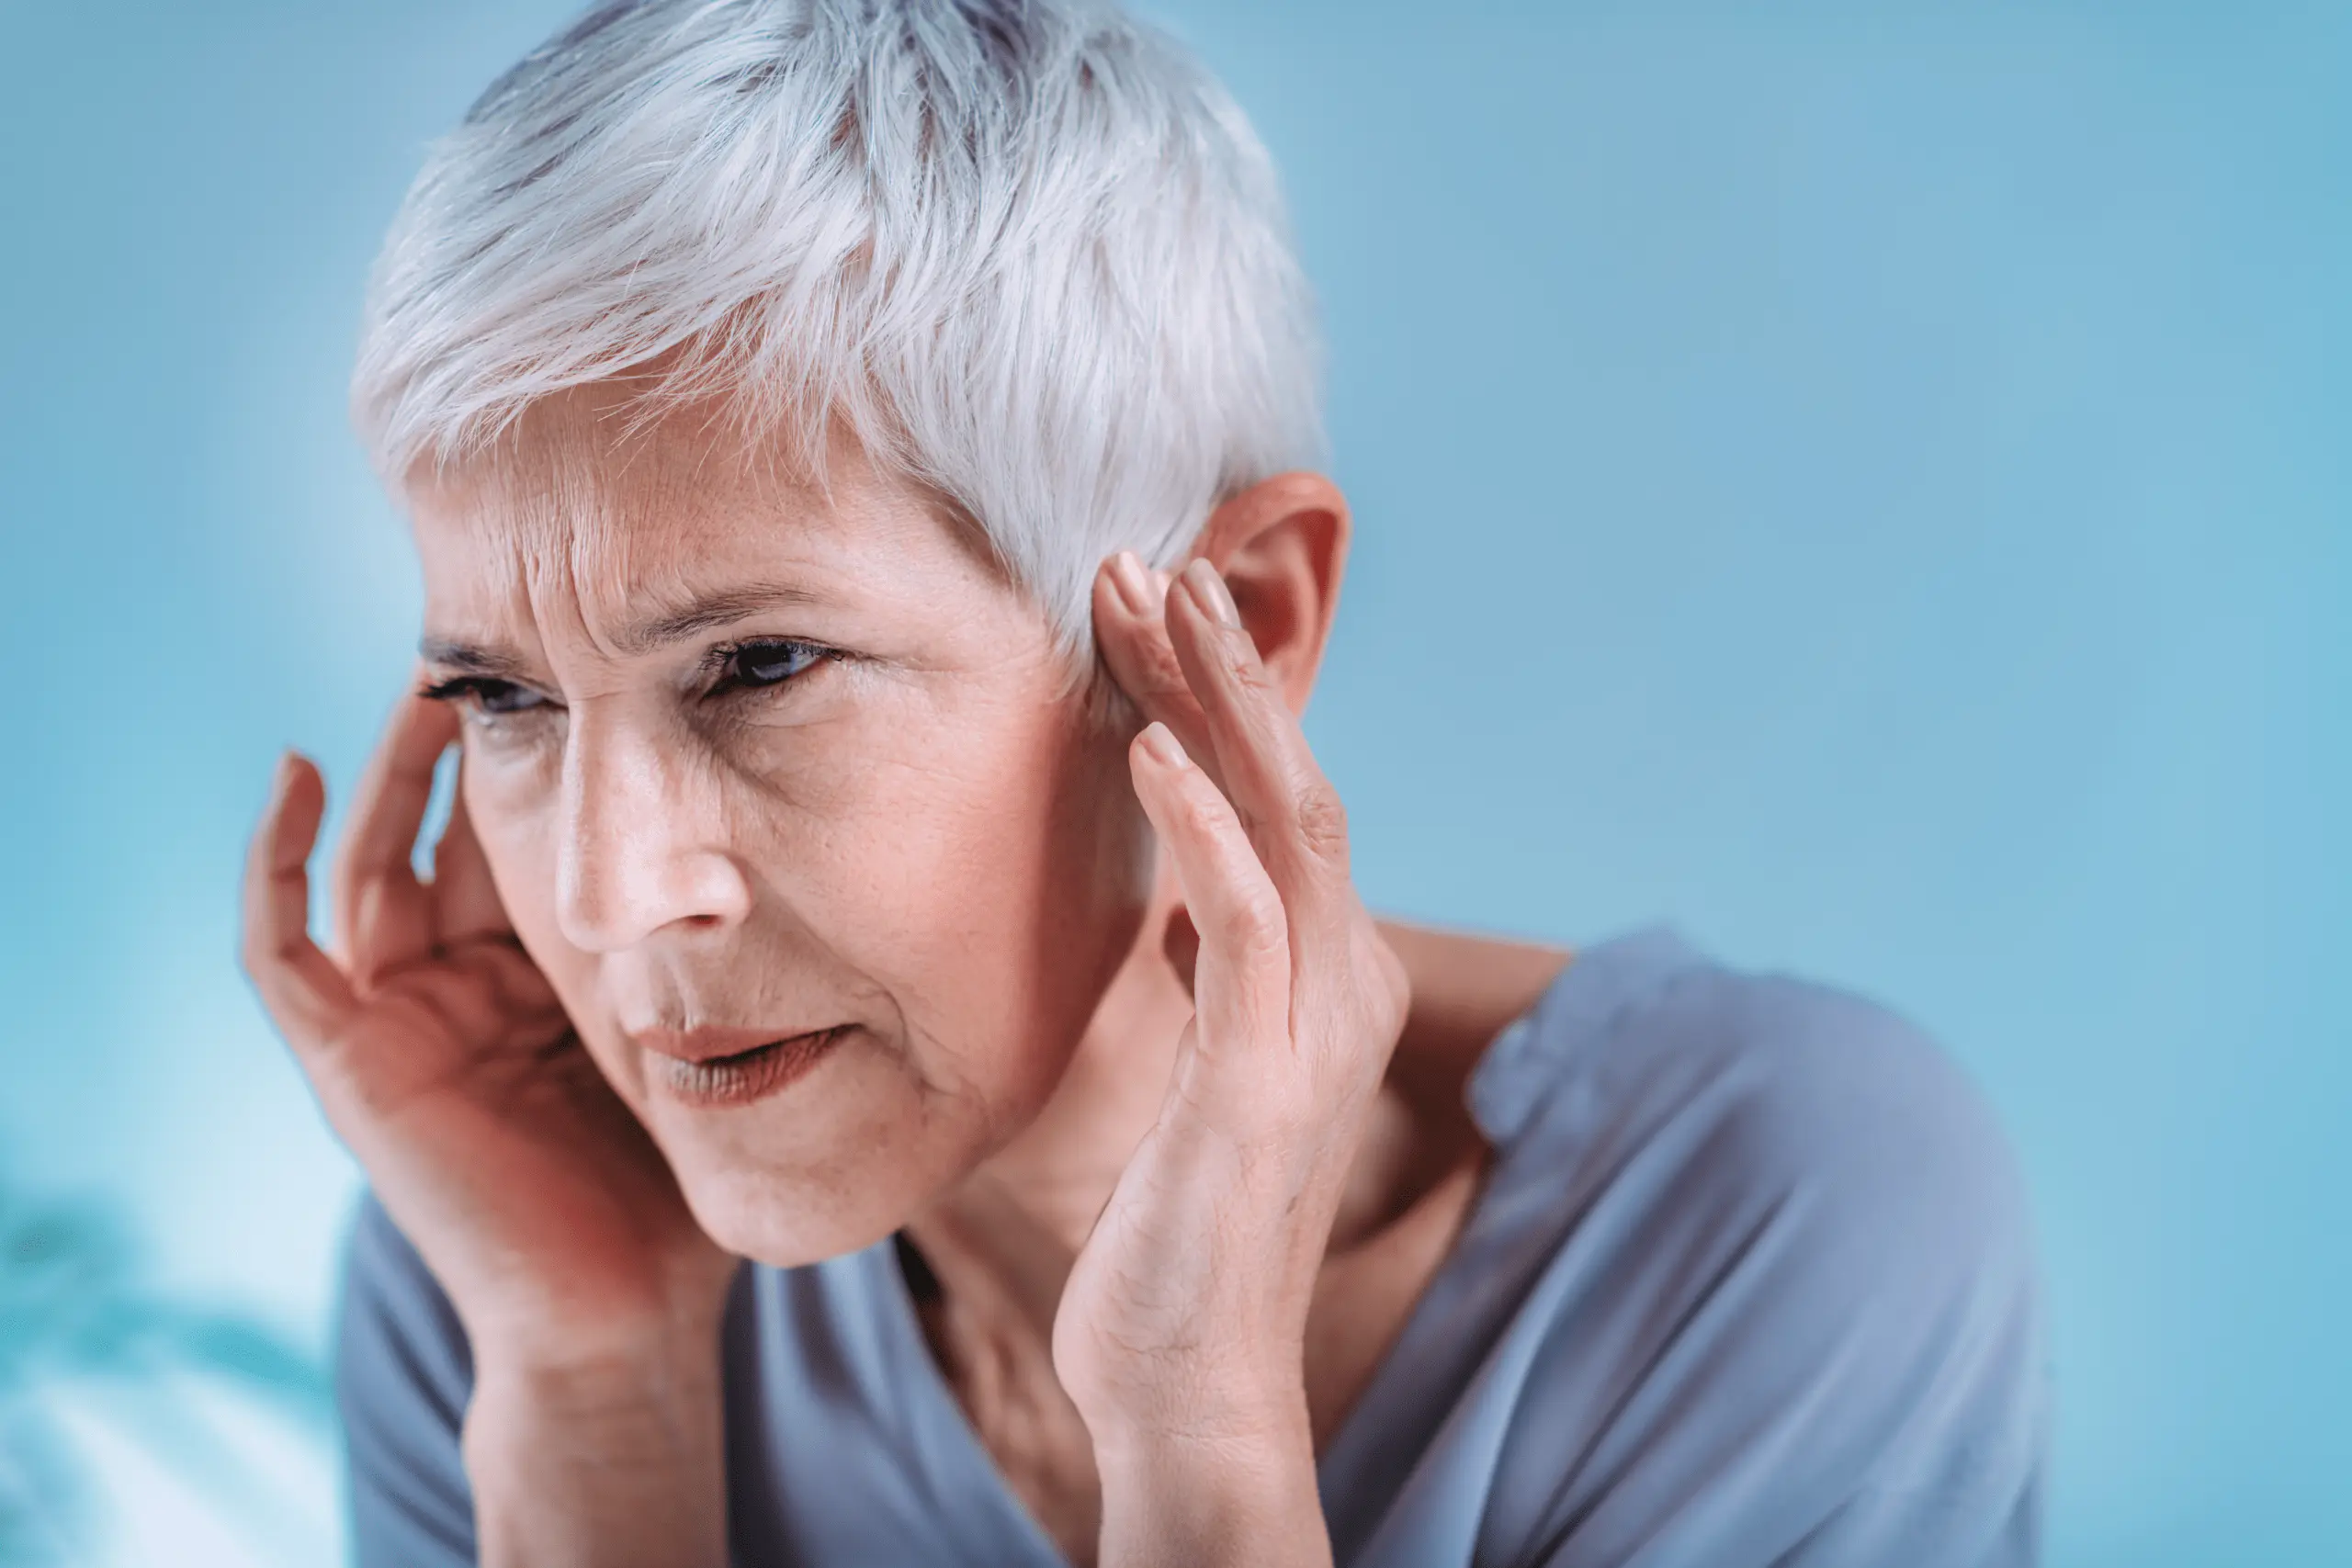 Marmed - Aparaty Słuchowe - Badanie Słuchu - Przewlekłe zapalenie ucha środkowego